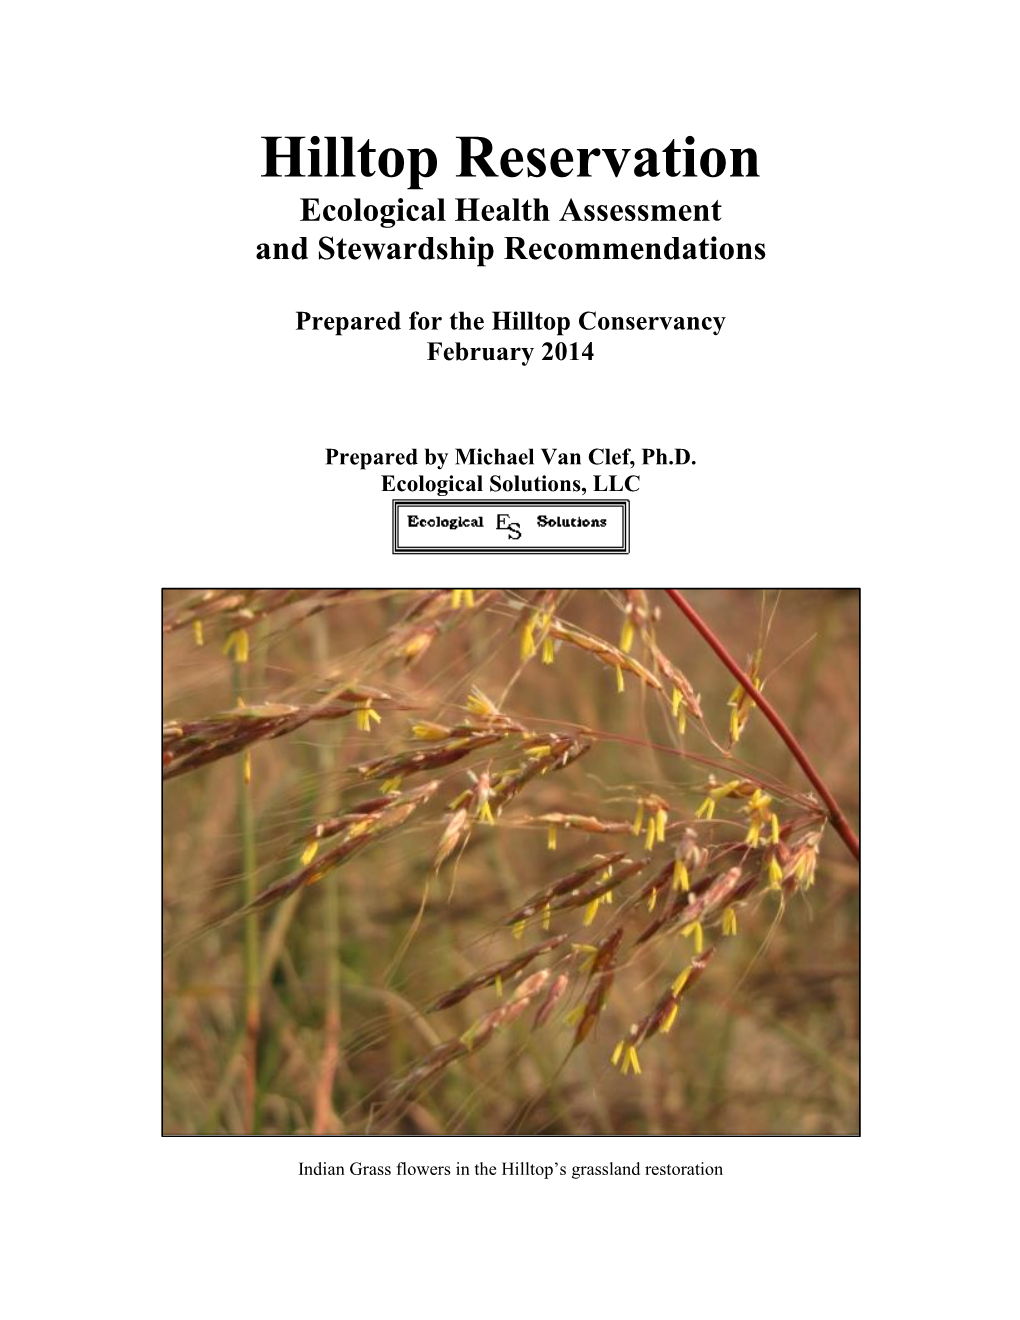 Hilltop Ecological Assessement